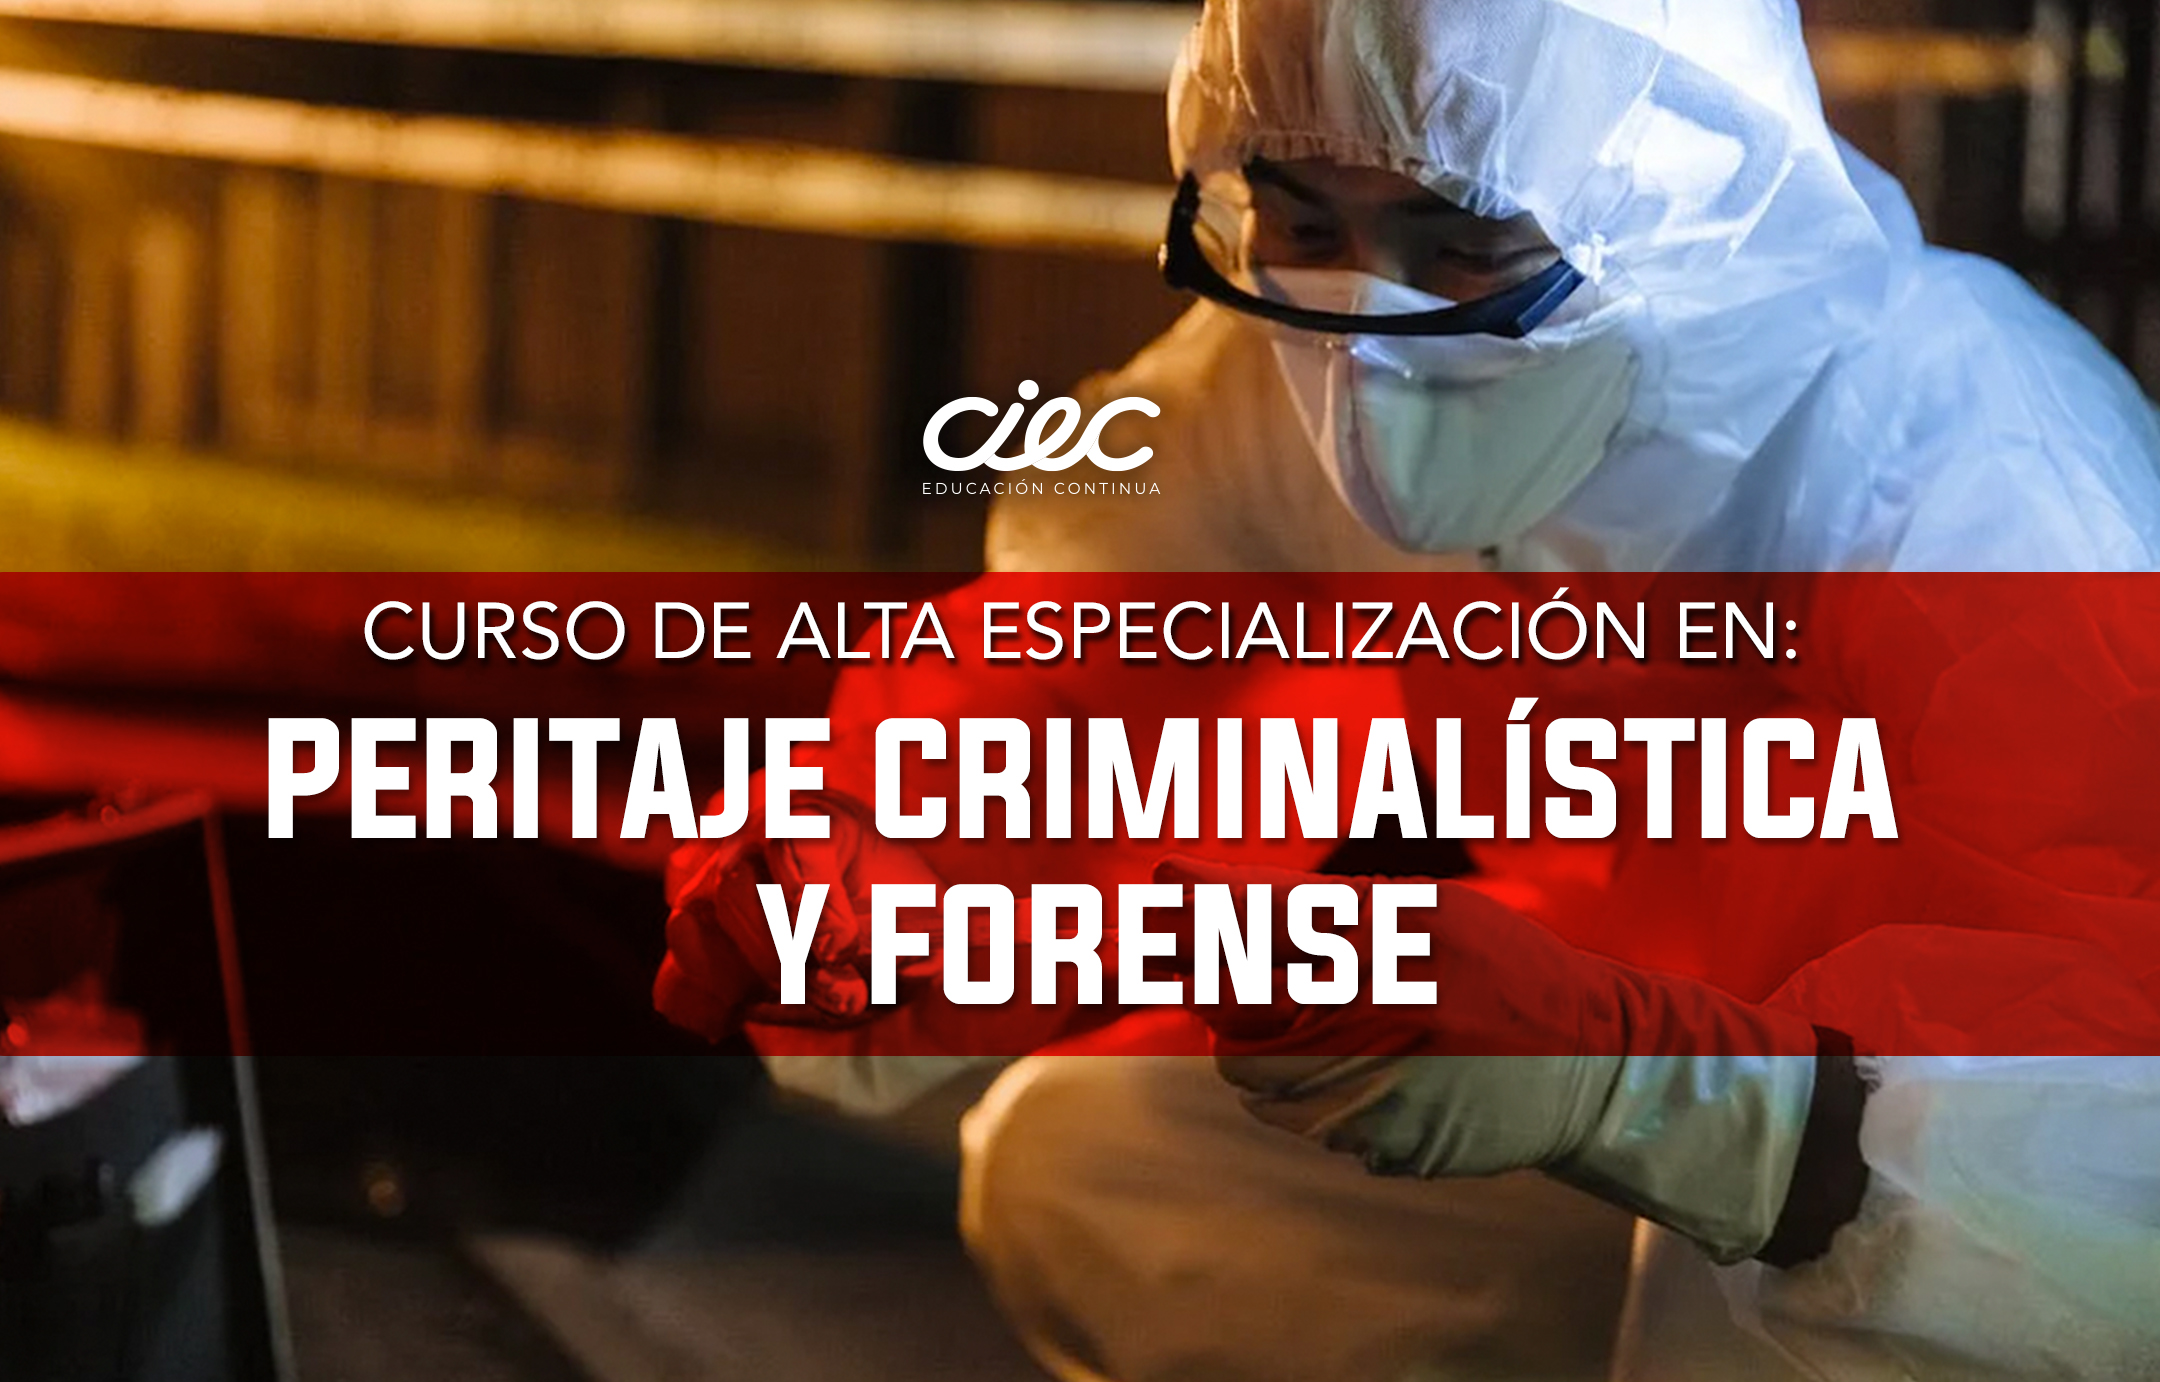 CURSO DE ALTA ESPECIALIZACIÓN EN PERITAJE CRIMINALÍSTICA Y FORENSE